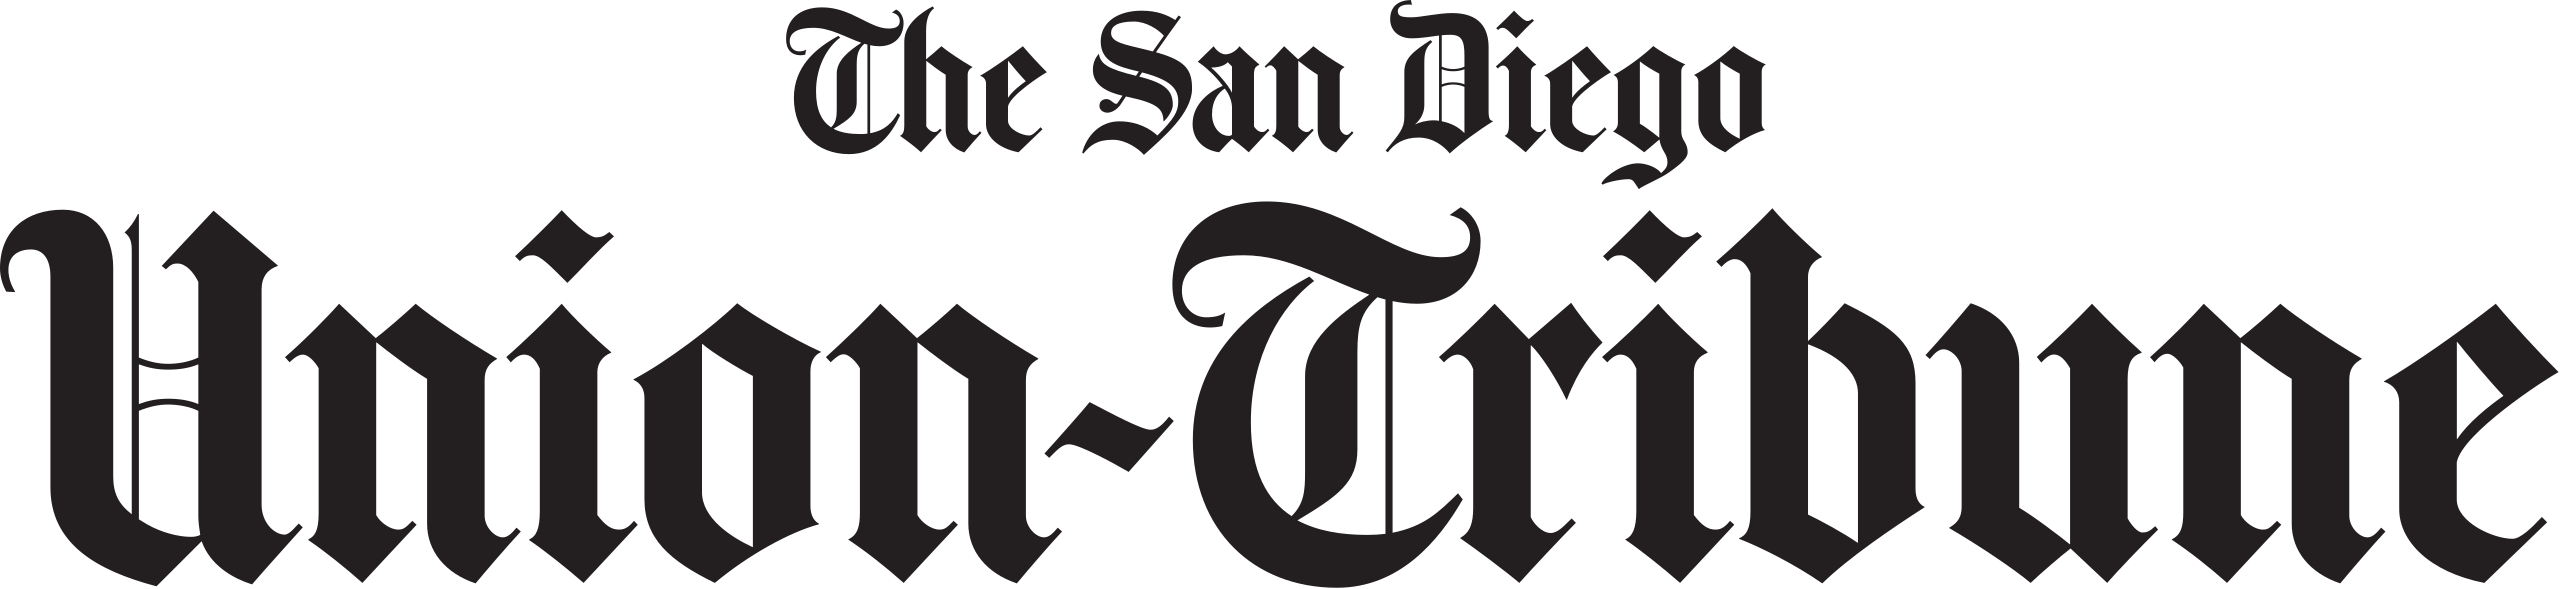 San Diego Union-Tribune logo